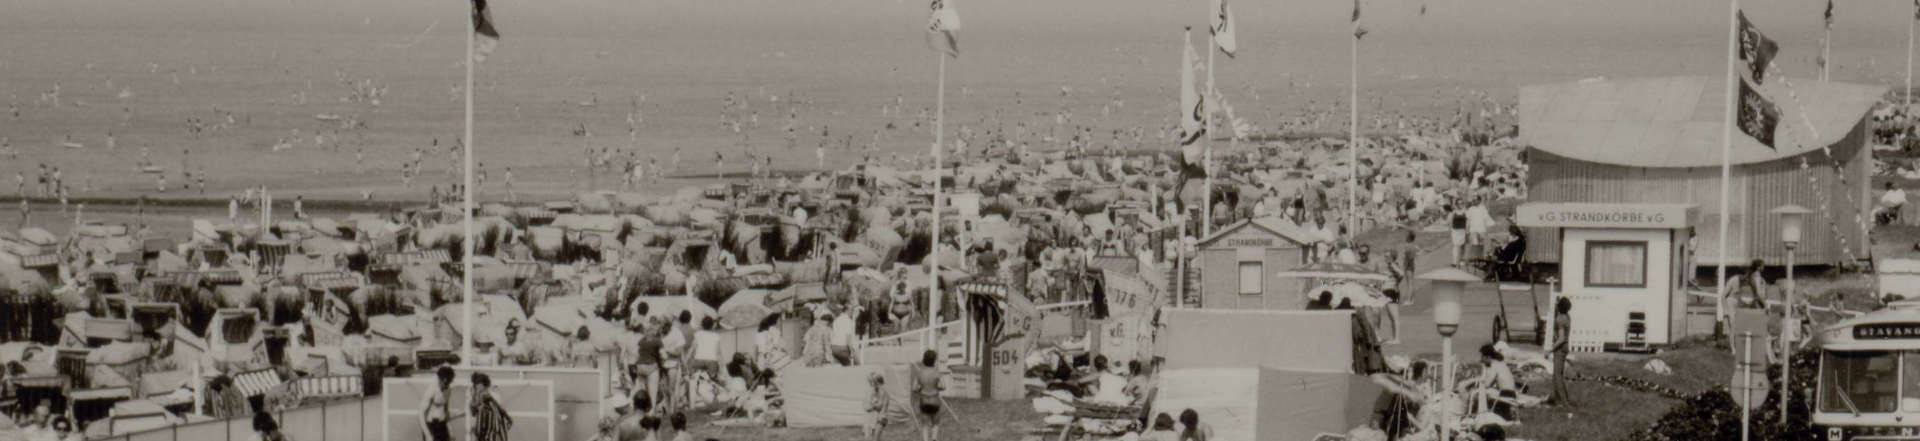 Strandleben 1973